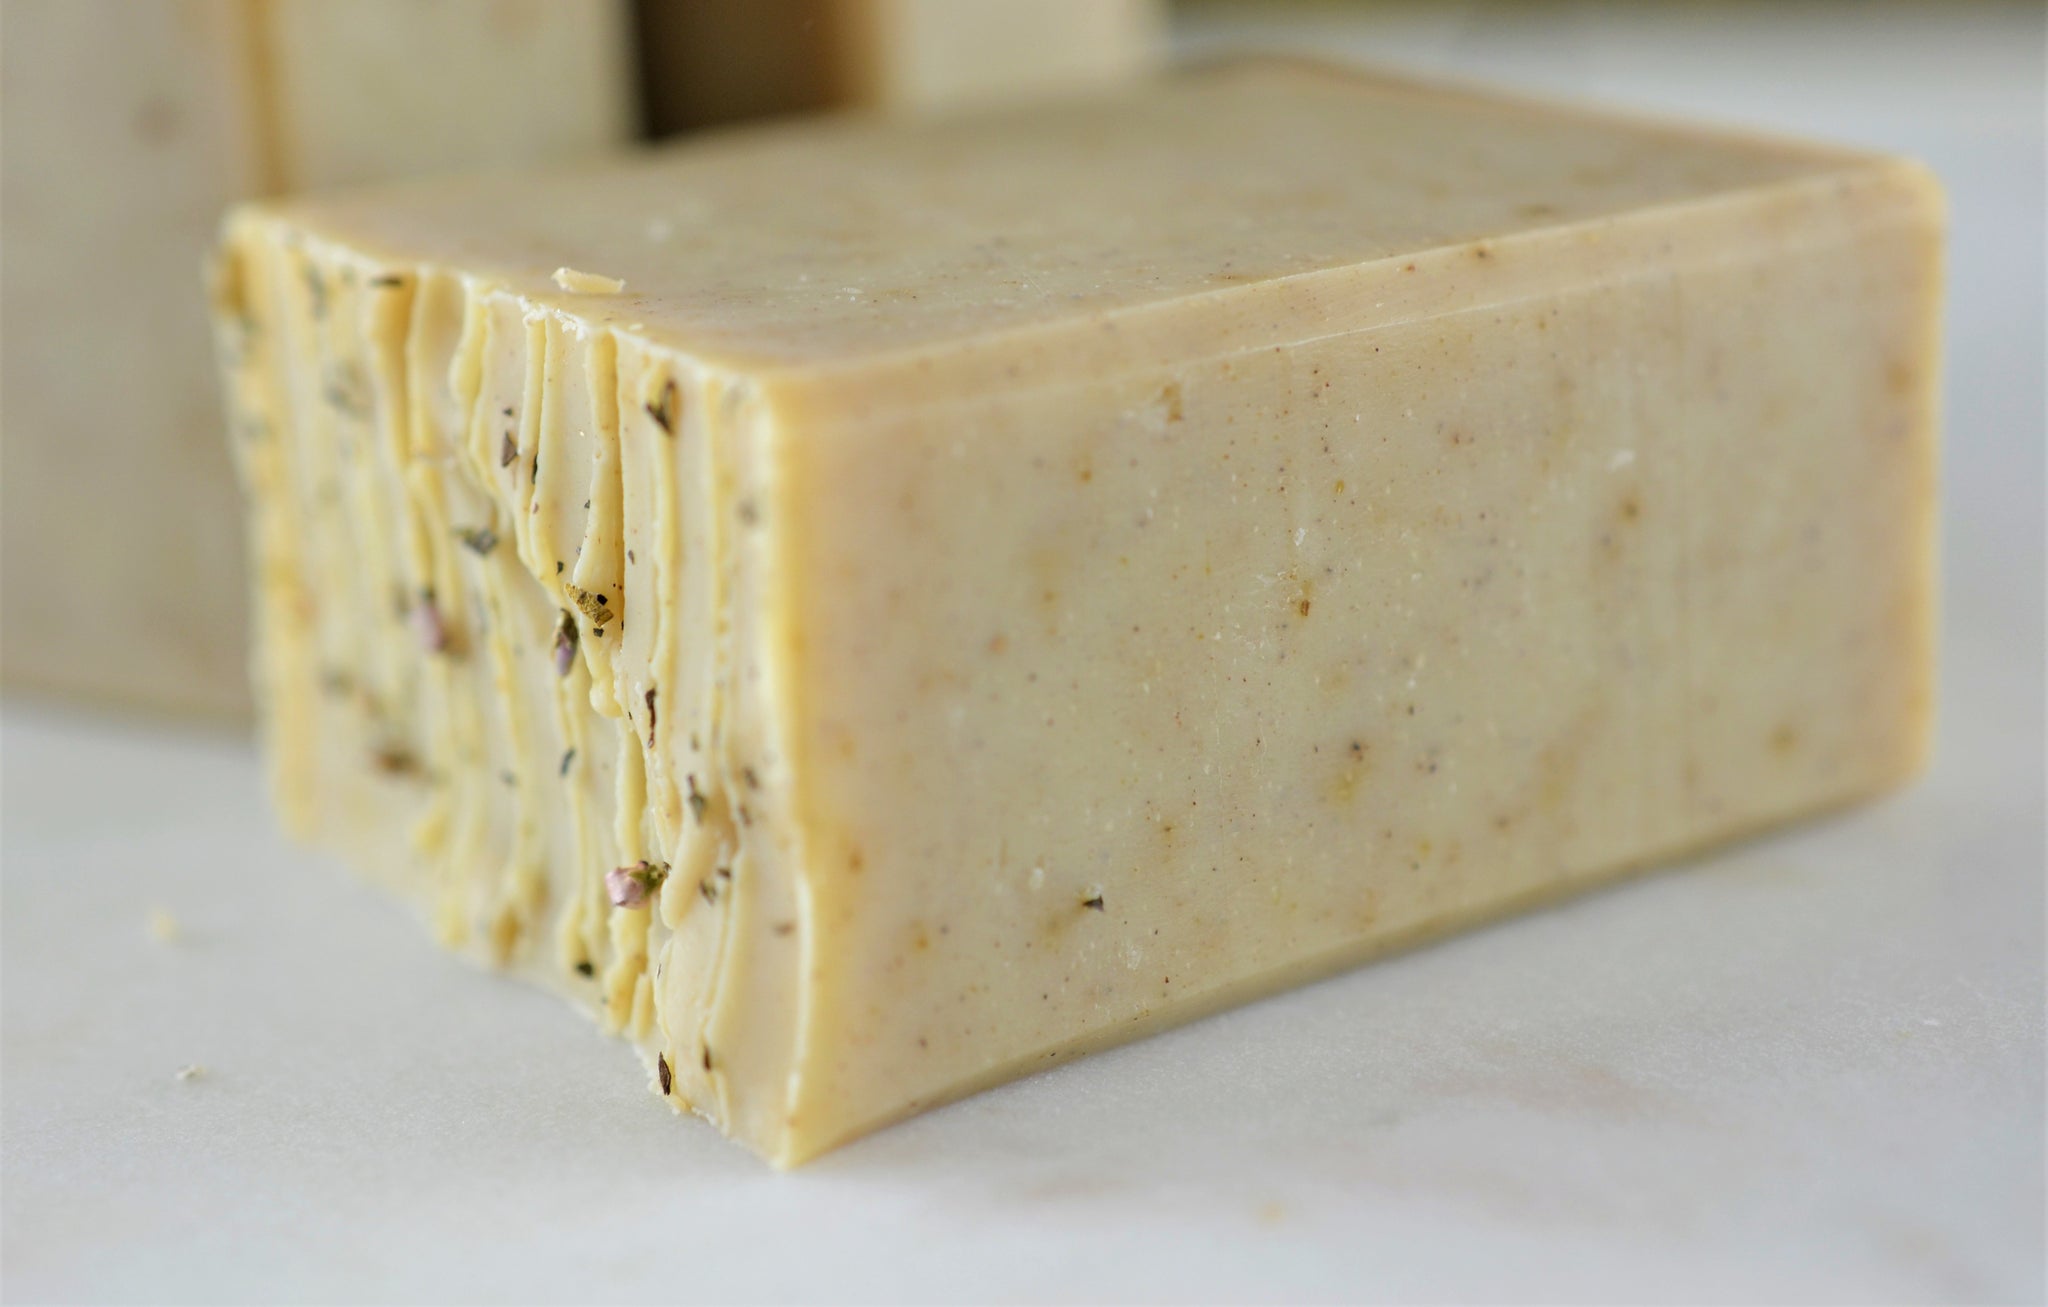 Basic Cheesemaking Supplies - Rosehips & Honey